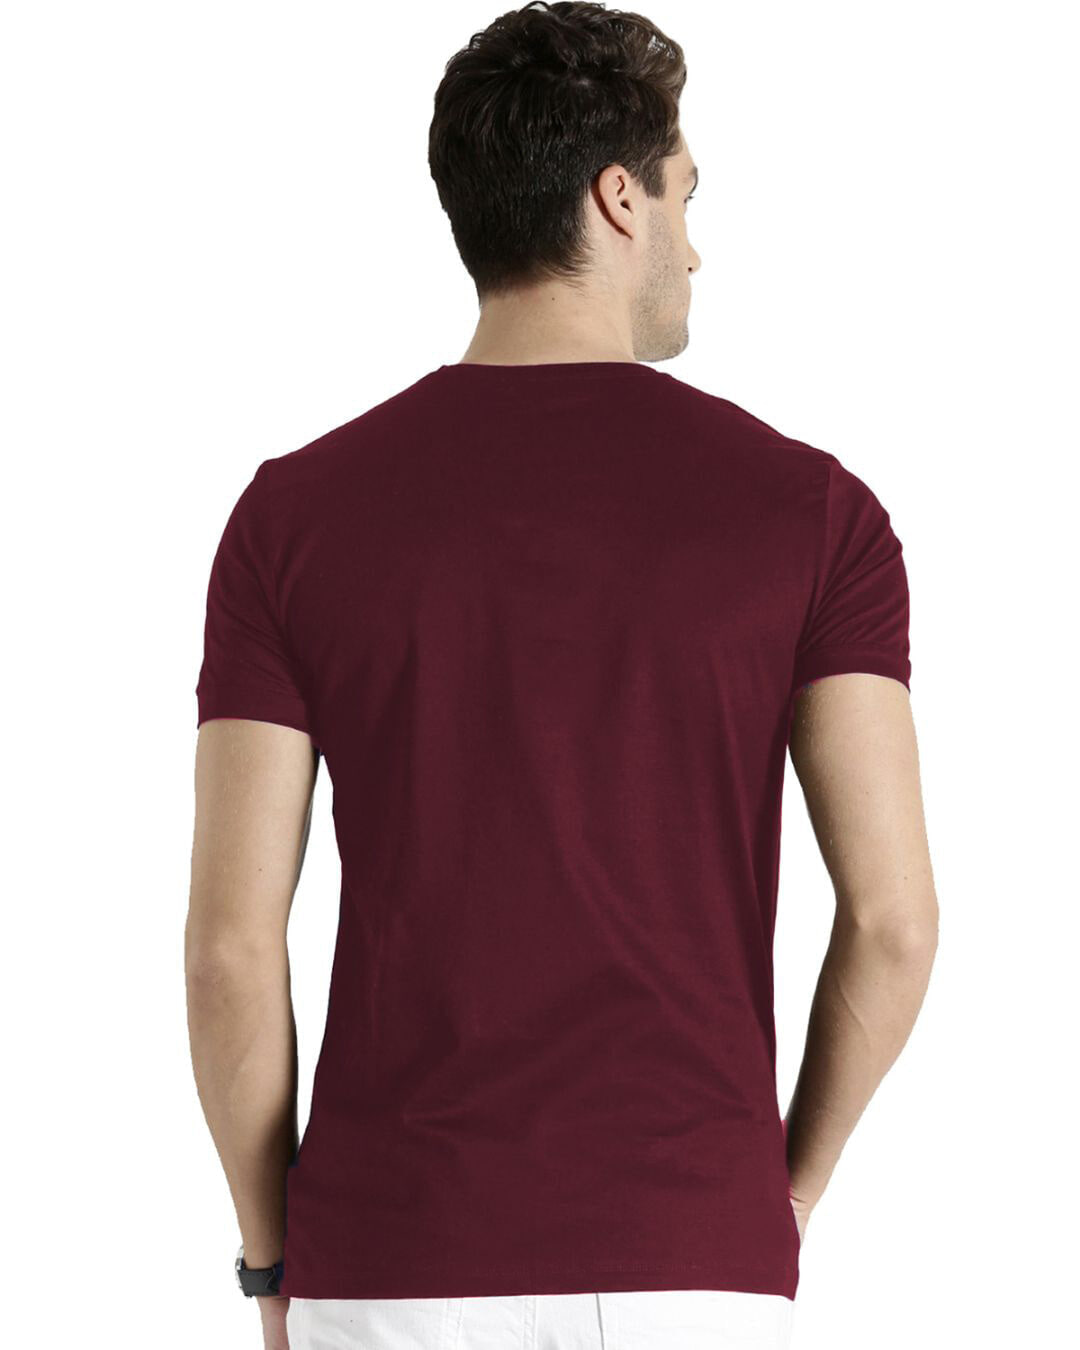 Shop Never Give Up Design Printed T-shirt for Men's-Back